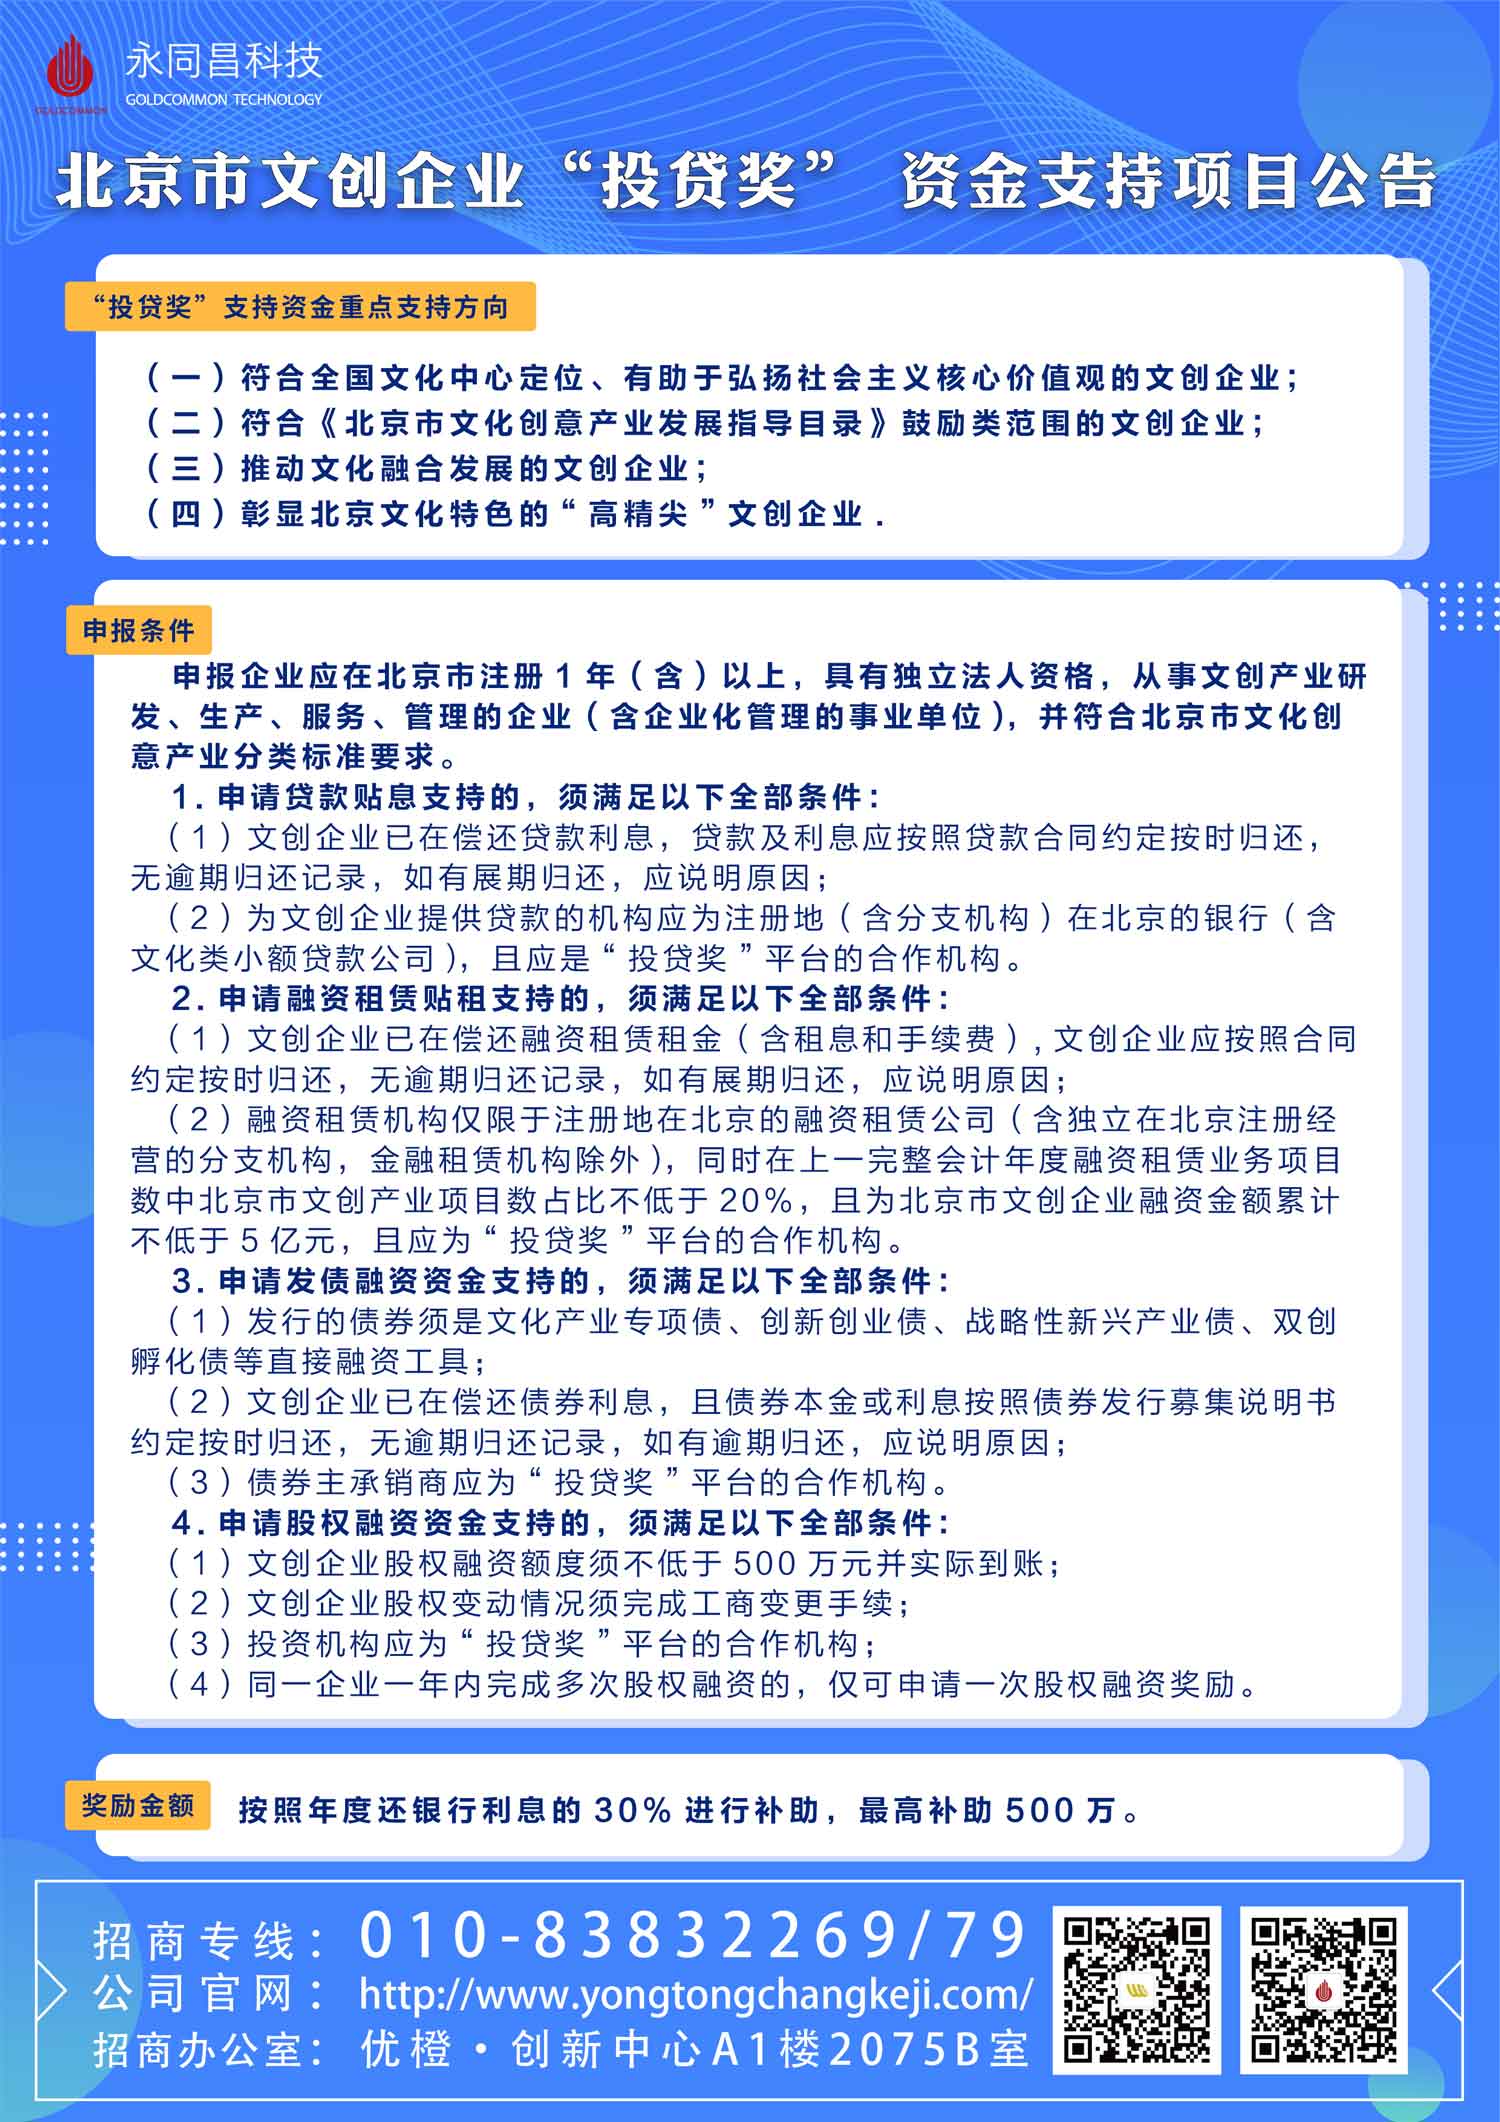 圆满举办 | U+创享汇【2020】北京市“房租通”和“投贷奖”政策解读及申报主题分享会